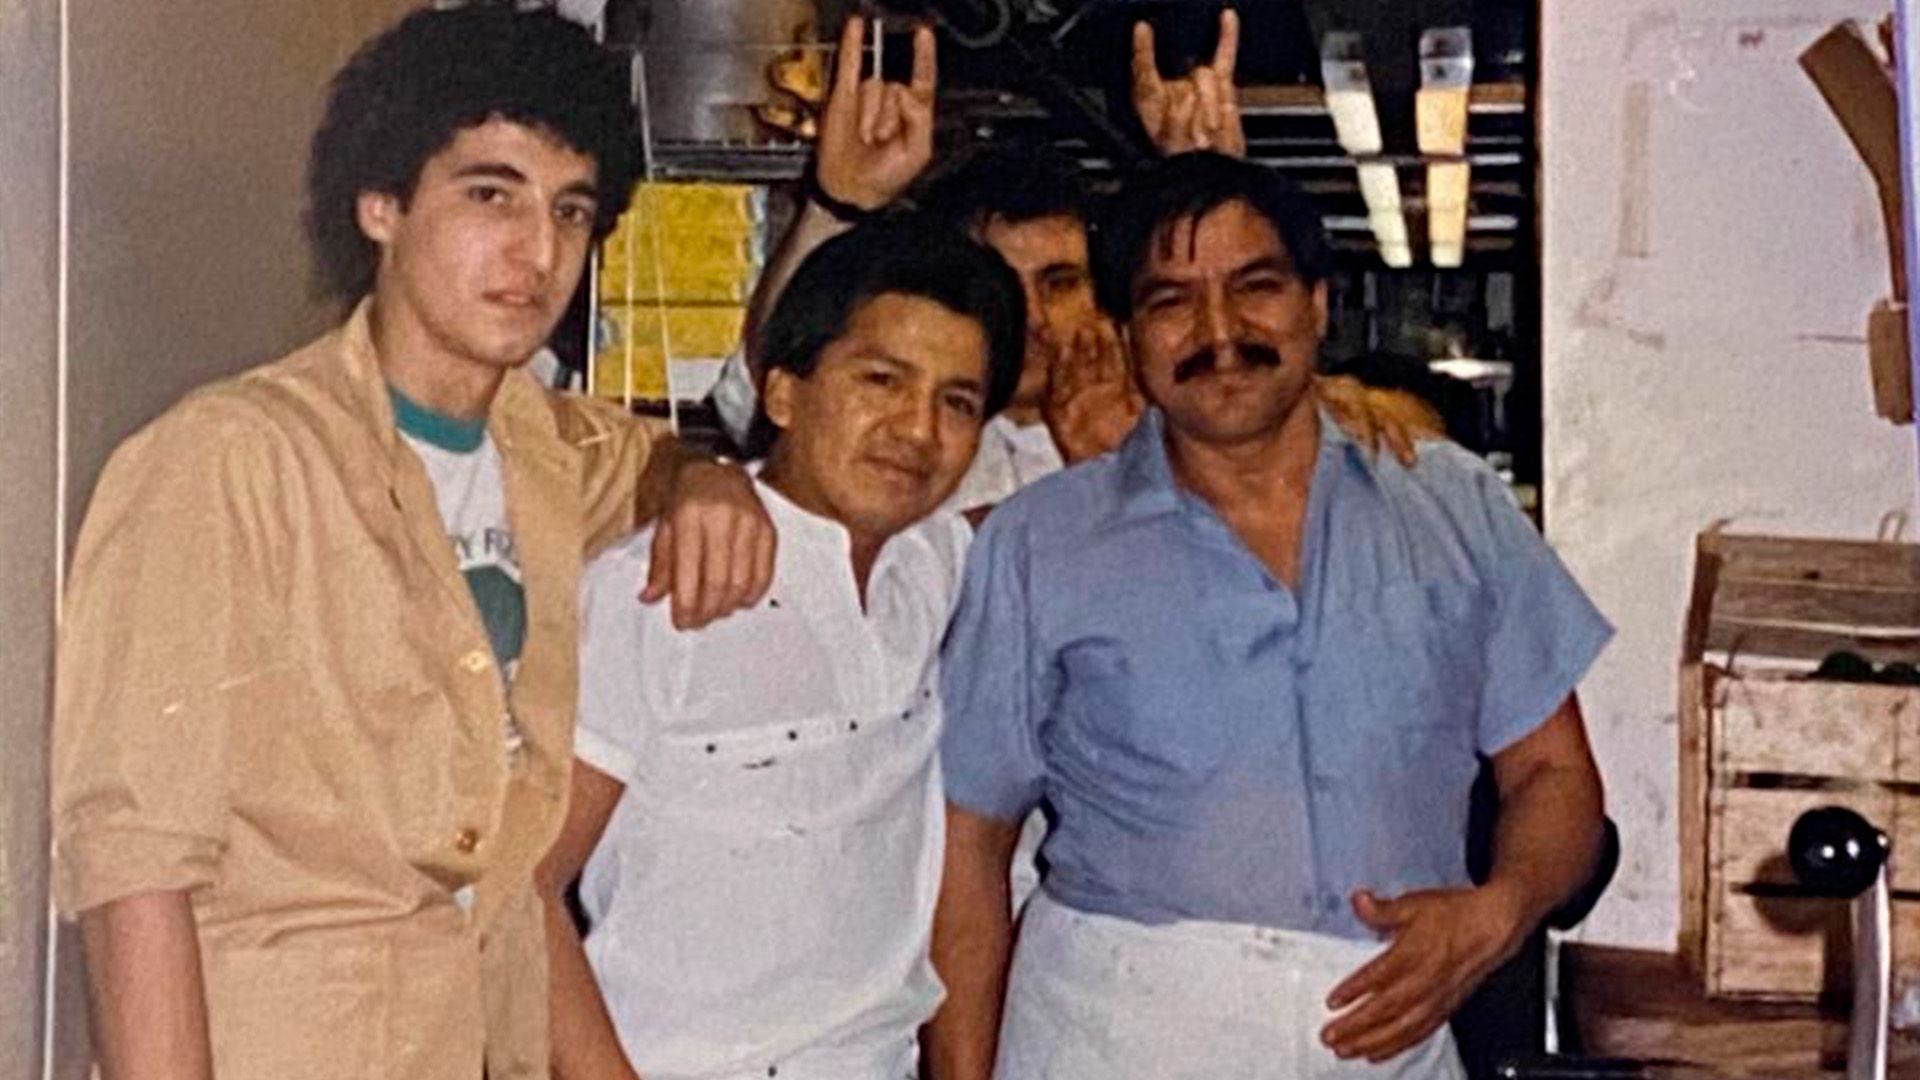 "Llegué a Miami con solo 18 años y unos pocos dólares en el bolsillo, pero mucho coraje y ganas de triunfar", un joven Gerardo Cea, a la izquierda de la foto